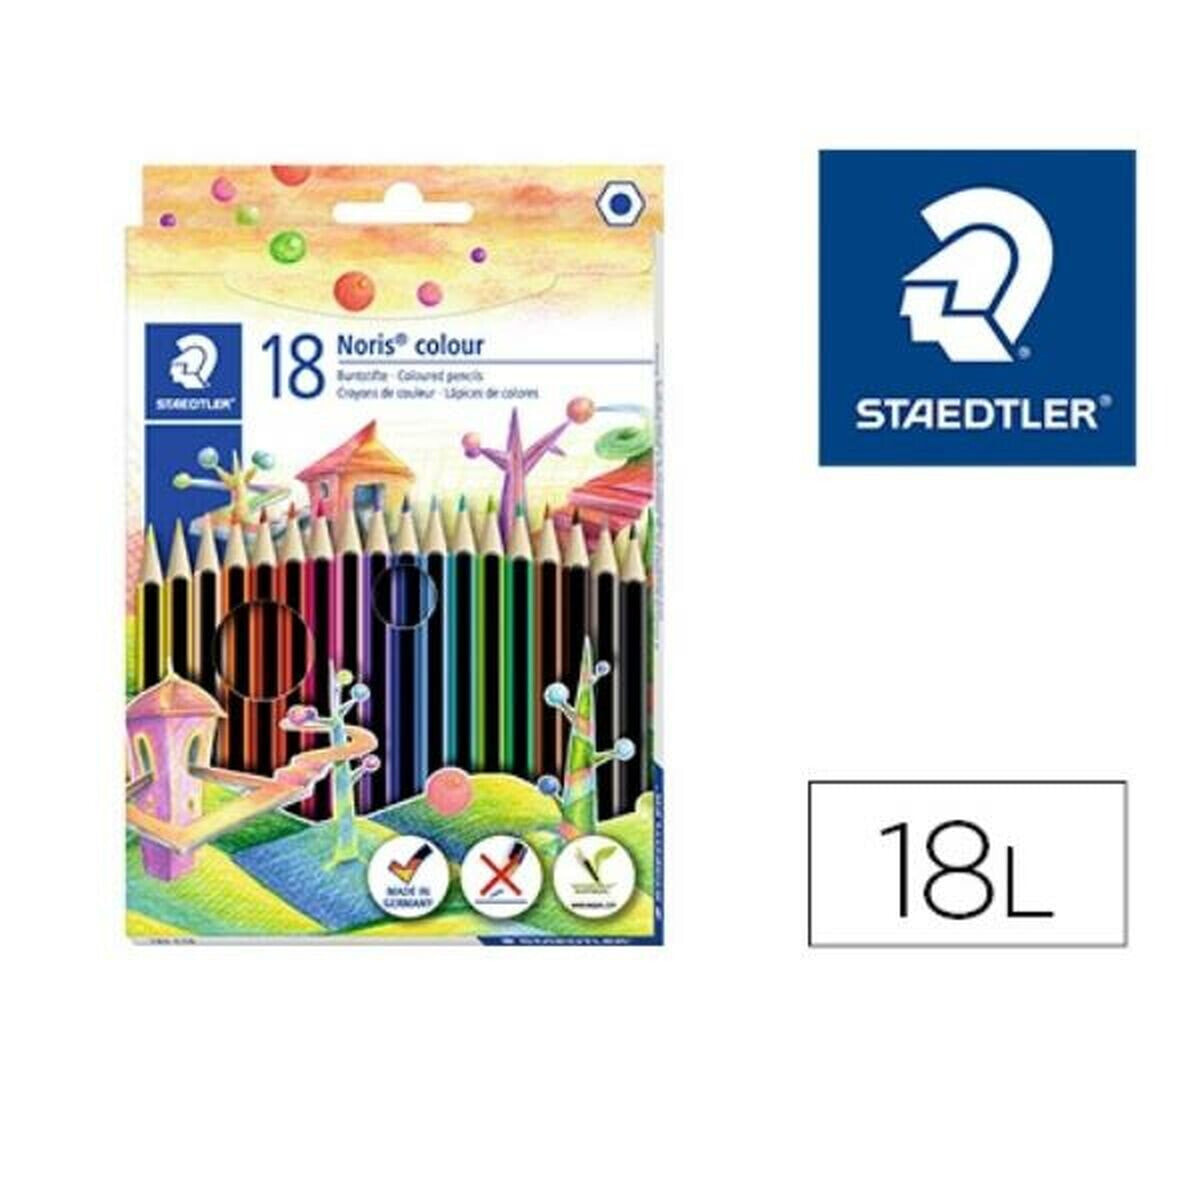 Colouring pencils Staedtler 185 C18 Multicolour 18 Pieces